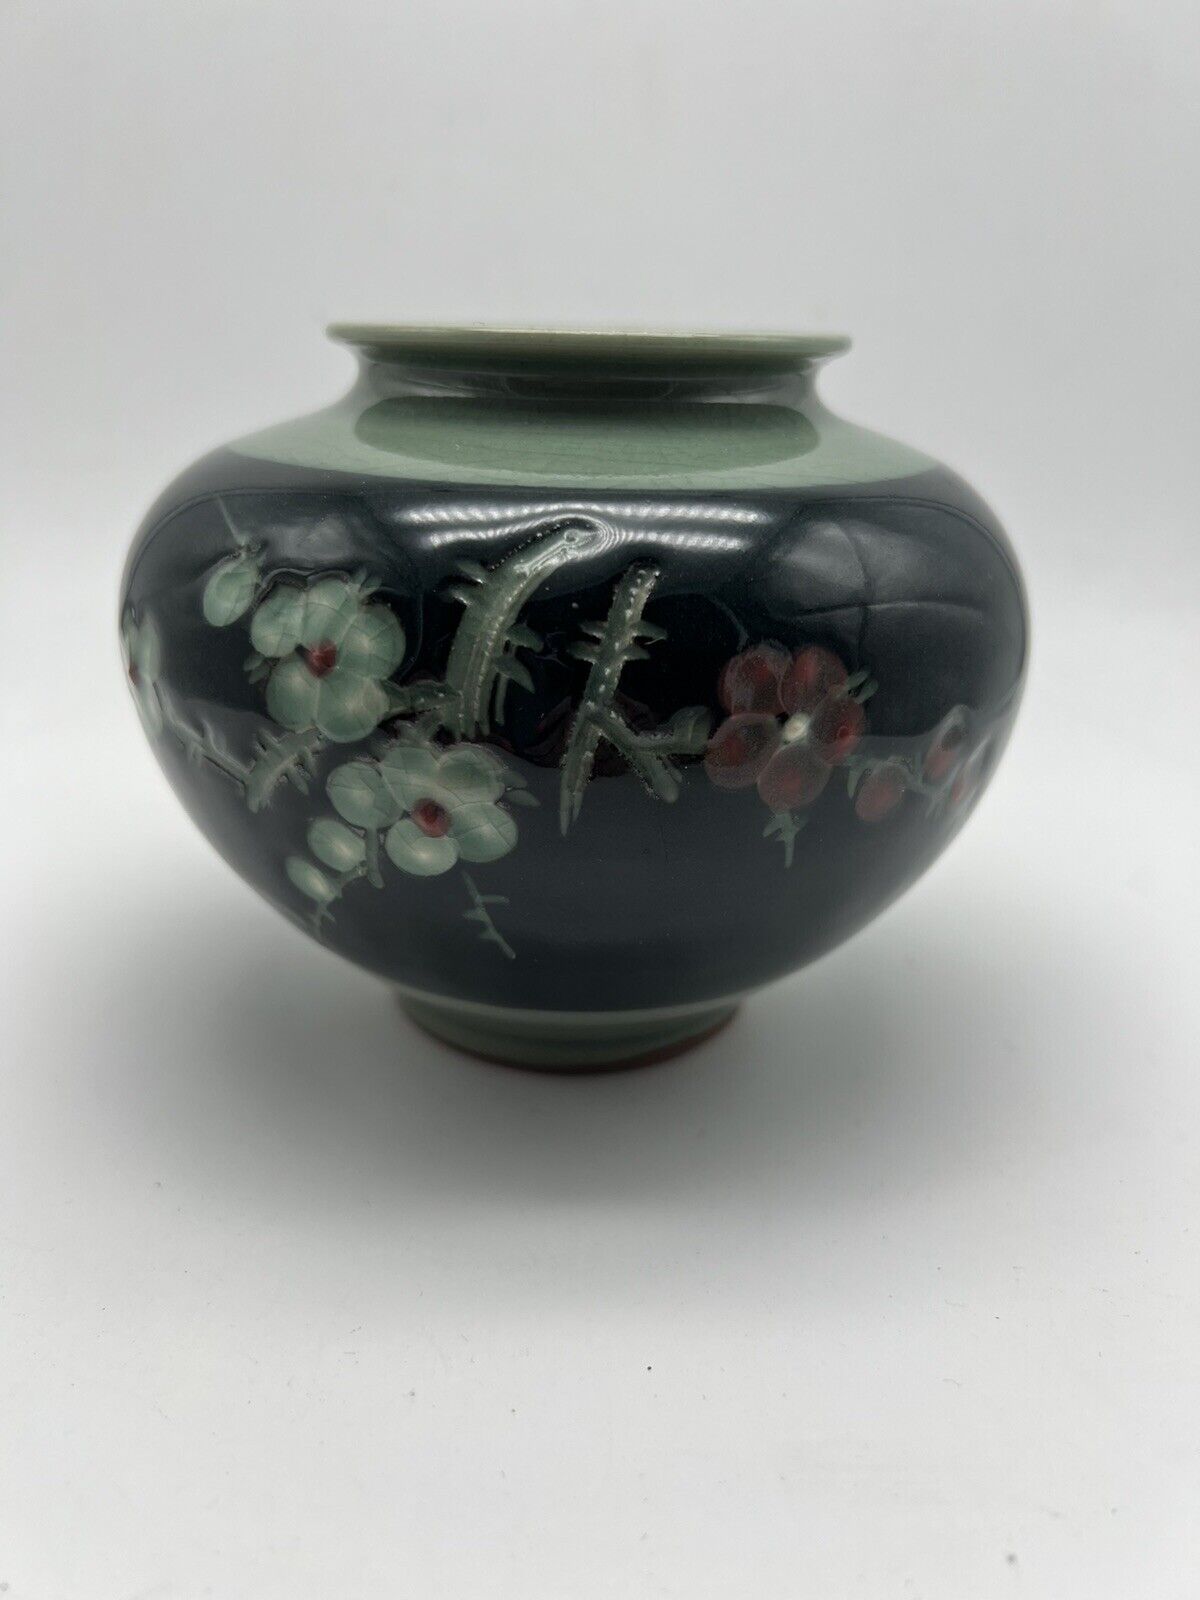 Vintage Floral Ceramic Vase Green and Pink Flowers